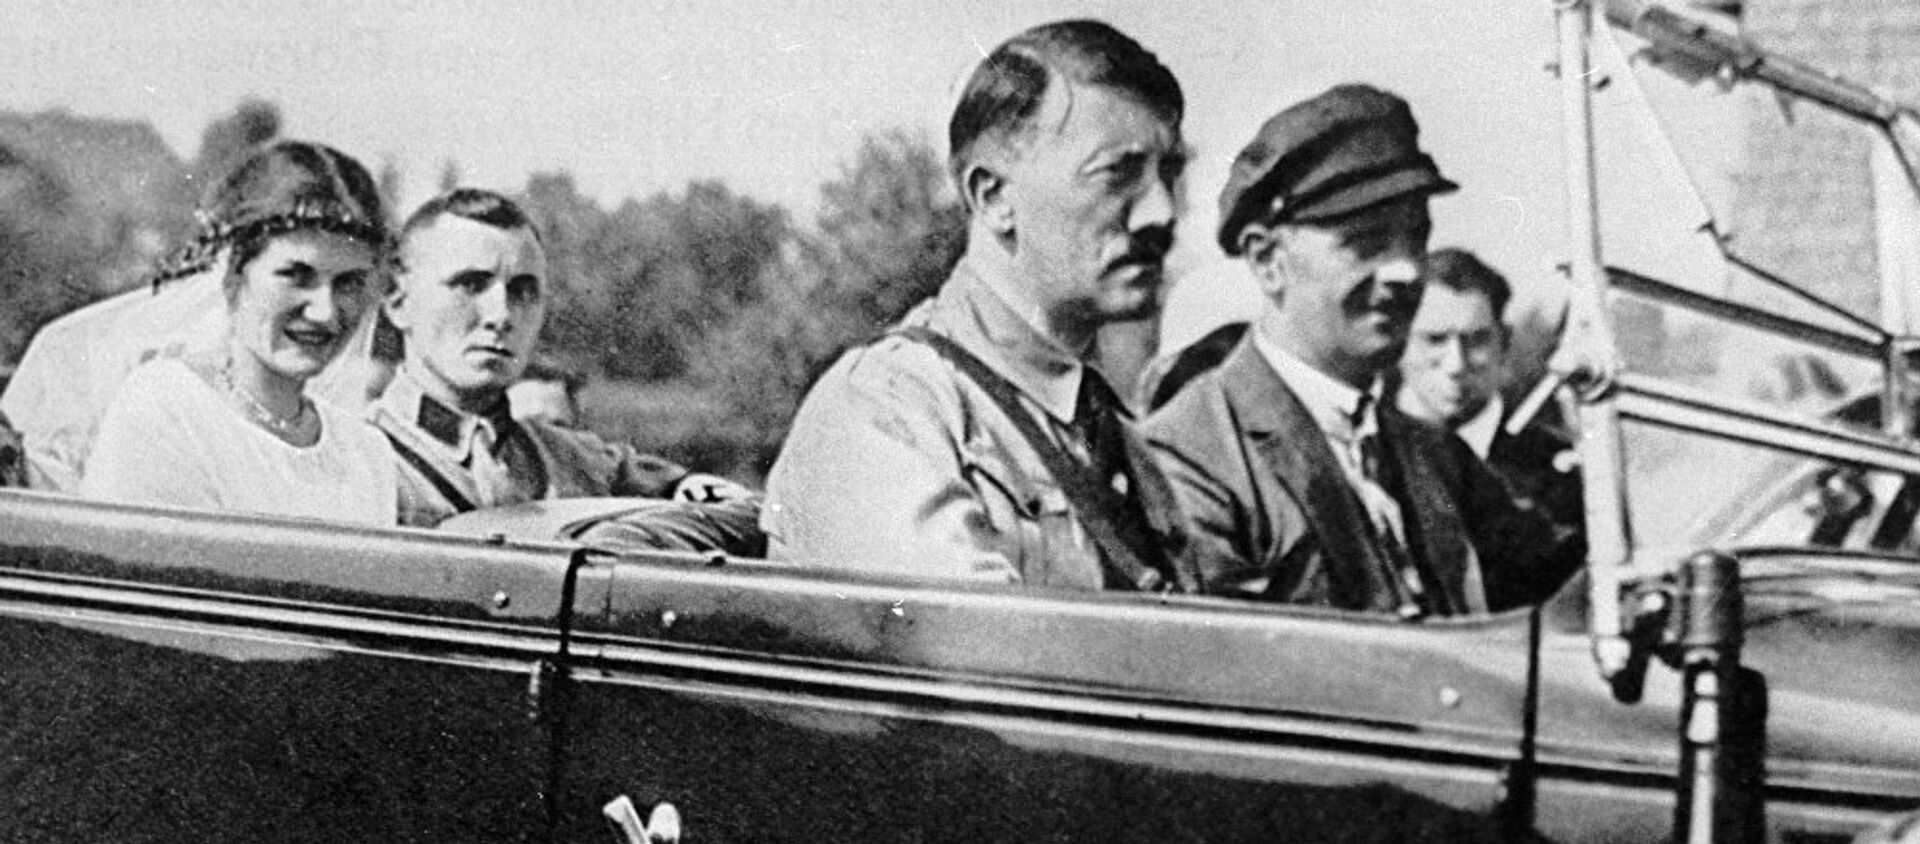 Глава Национал-социалистской партии Германии Адольф Гитлер (в центре) с соратником по партии Мартином Борманом (сзади) и его невестой - Sputnik Абхазия, 1920, 04.11.2017